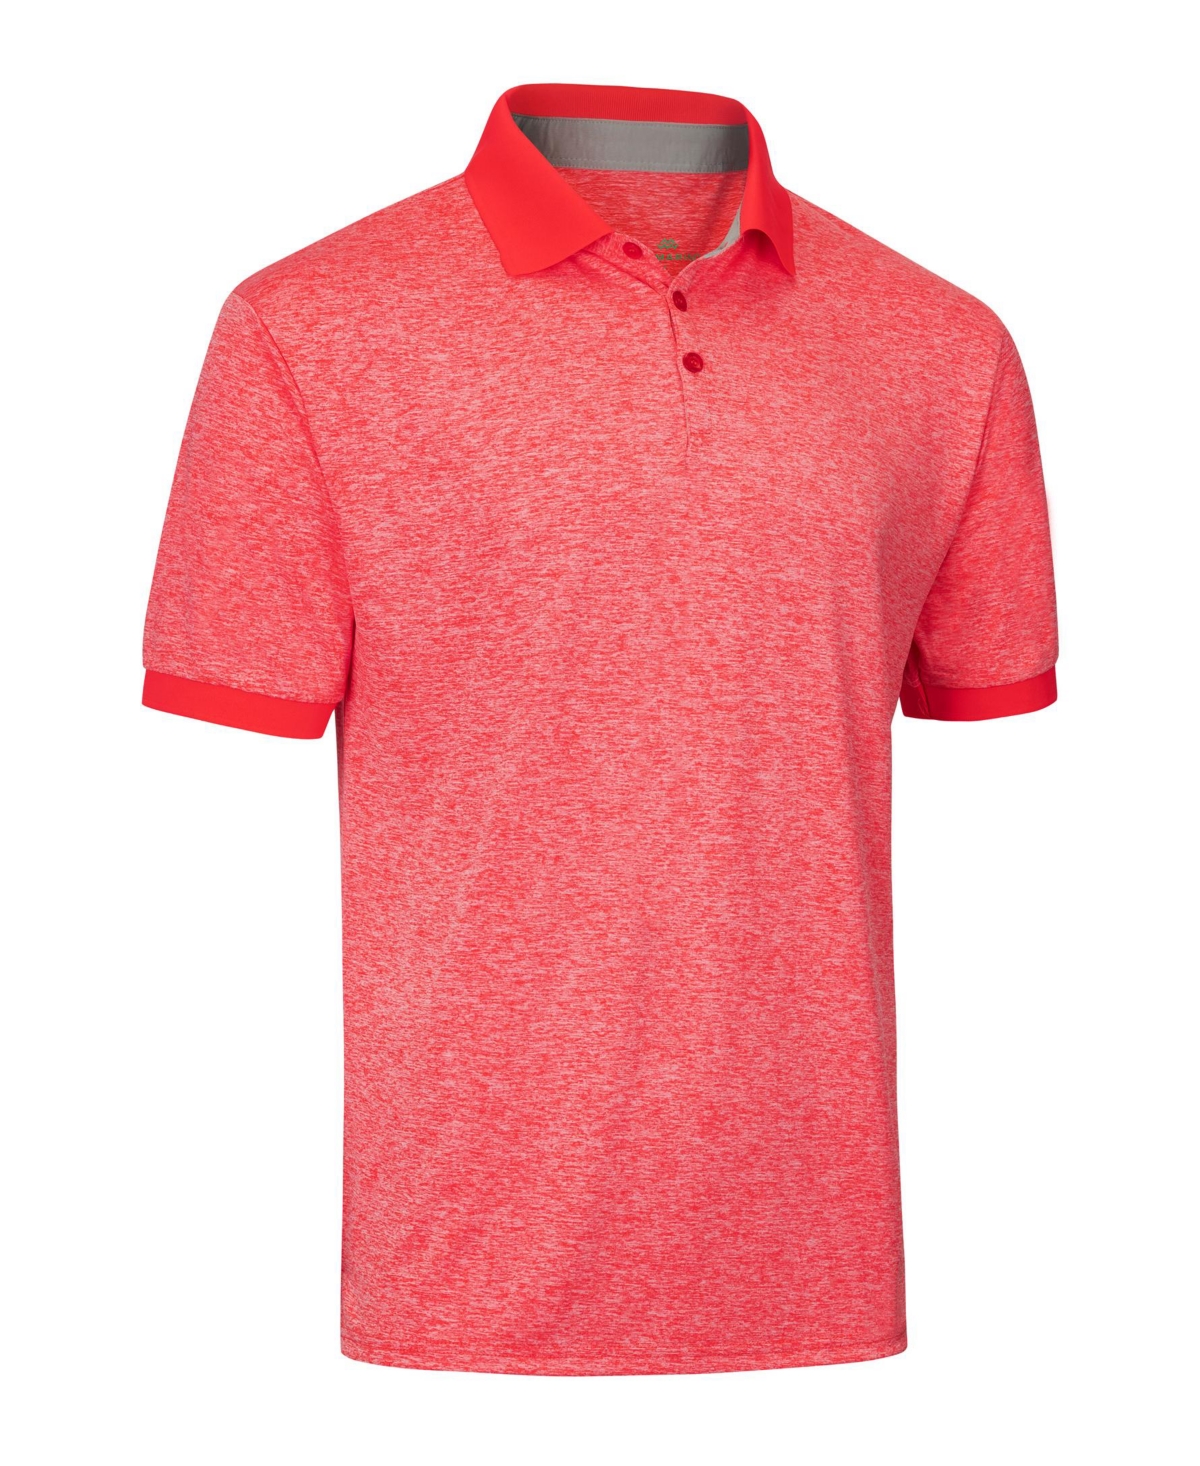 Men's Designer Golf Polo Shirt - Salmon red